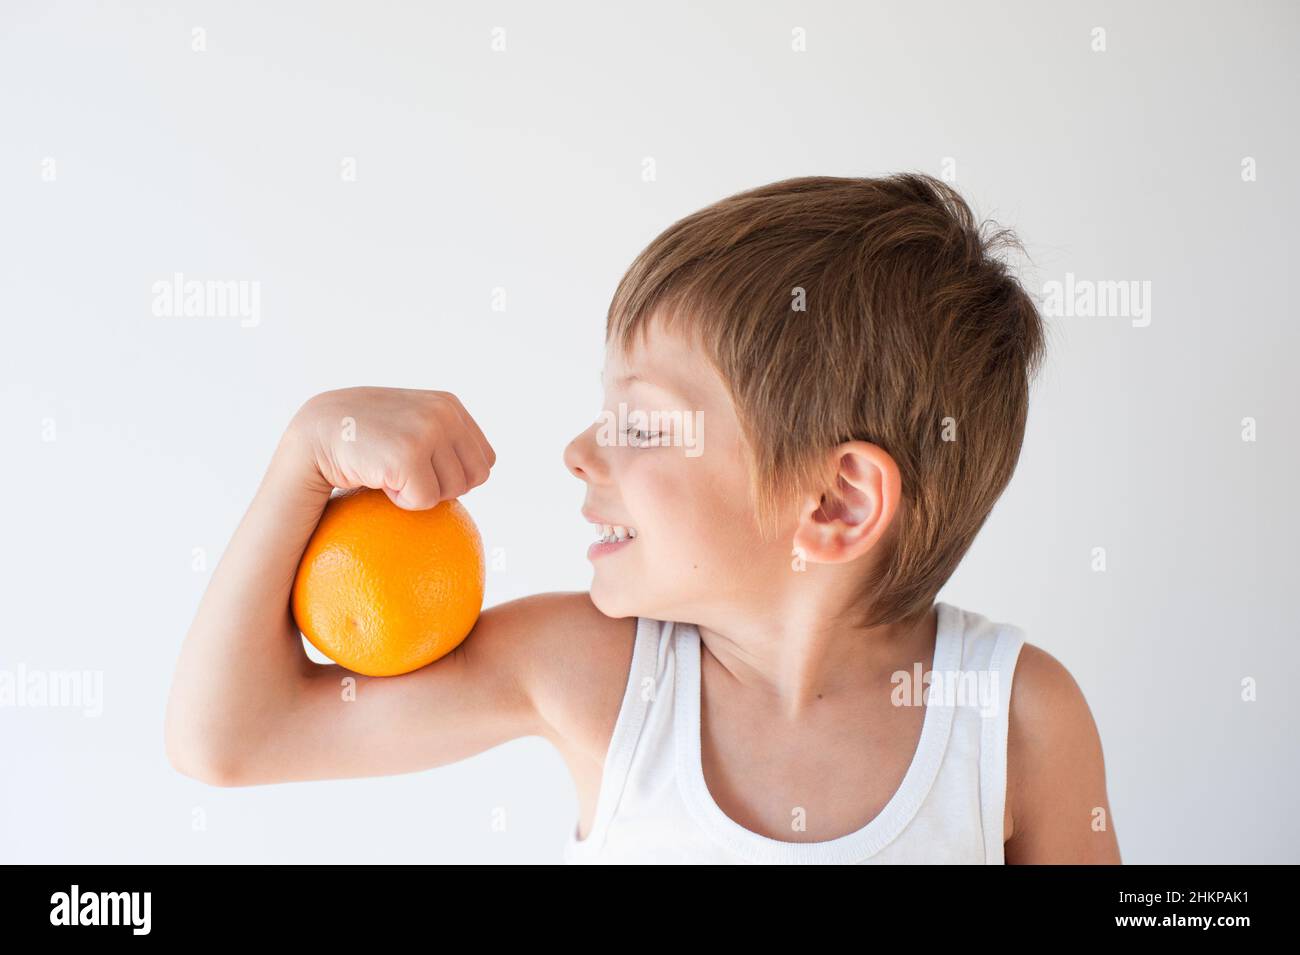 un niño pequeño sano quiere comer naranja Foto de stock